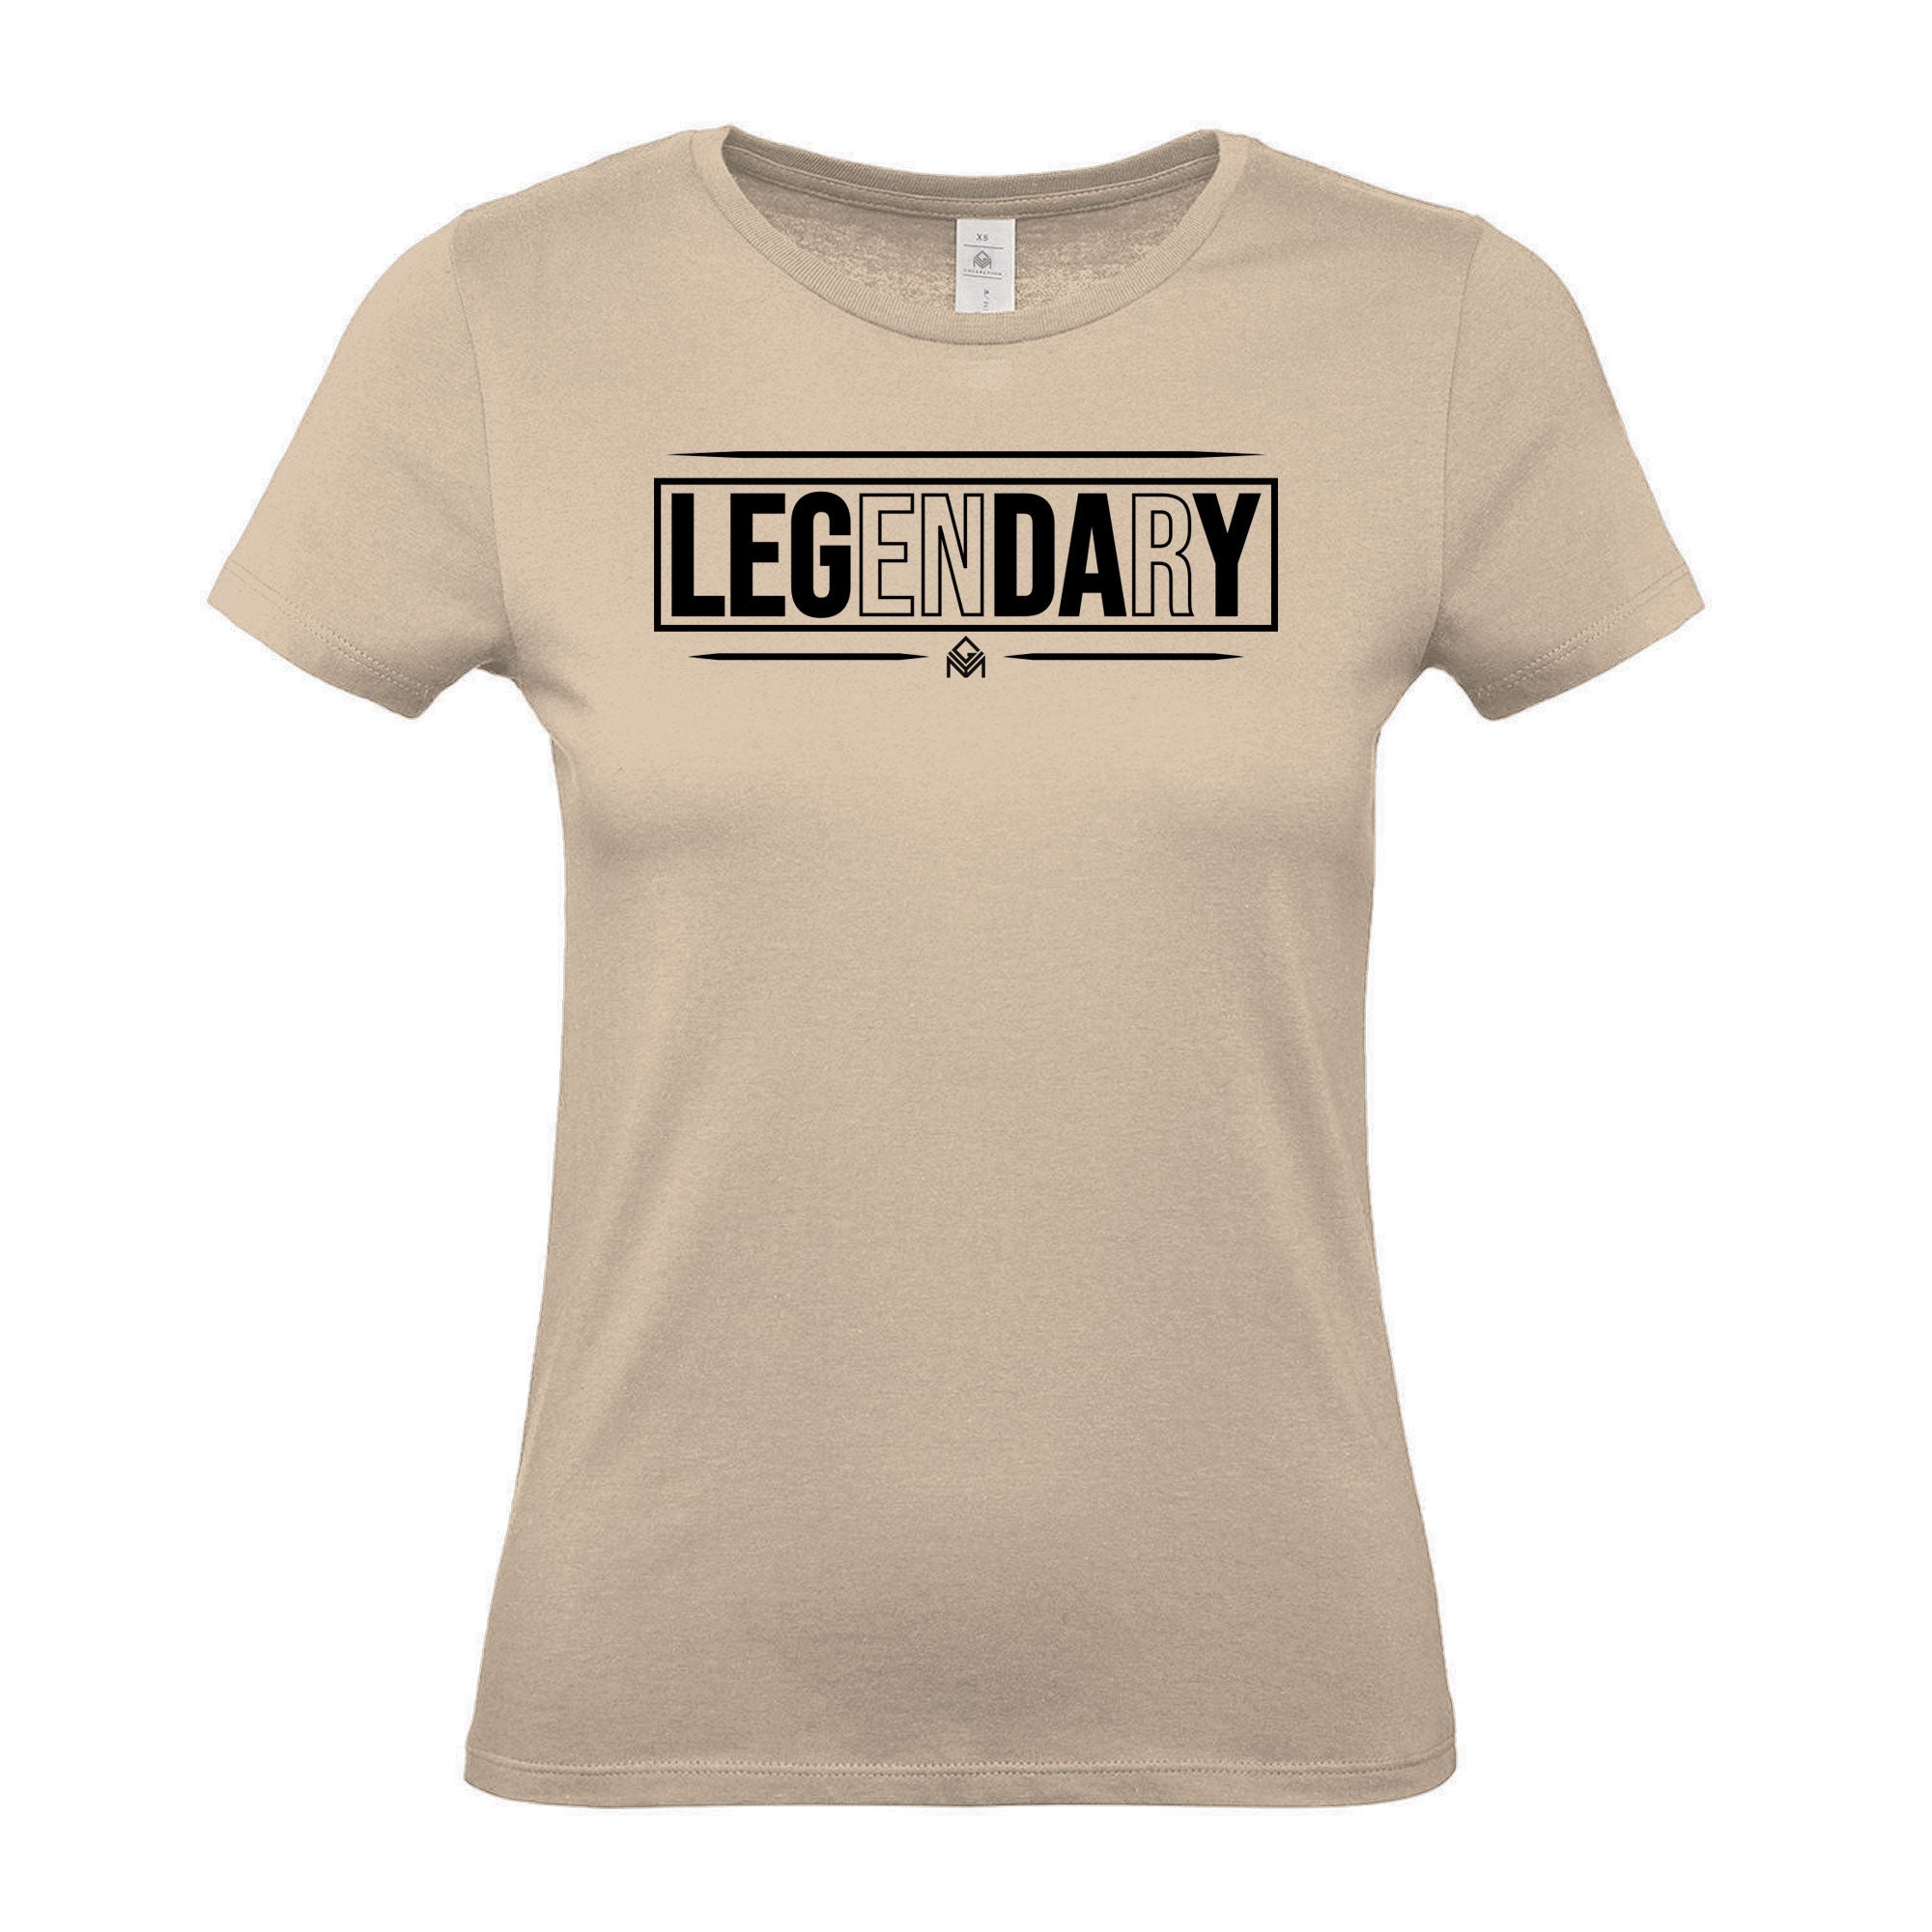 LEGenDArY - Women's Gym T-Shirt